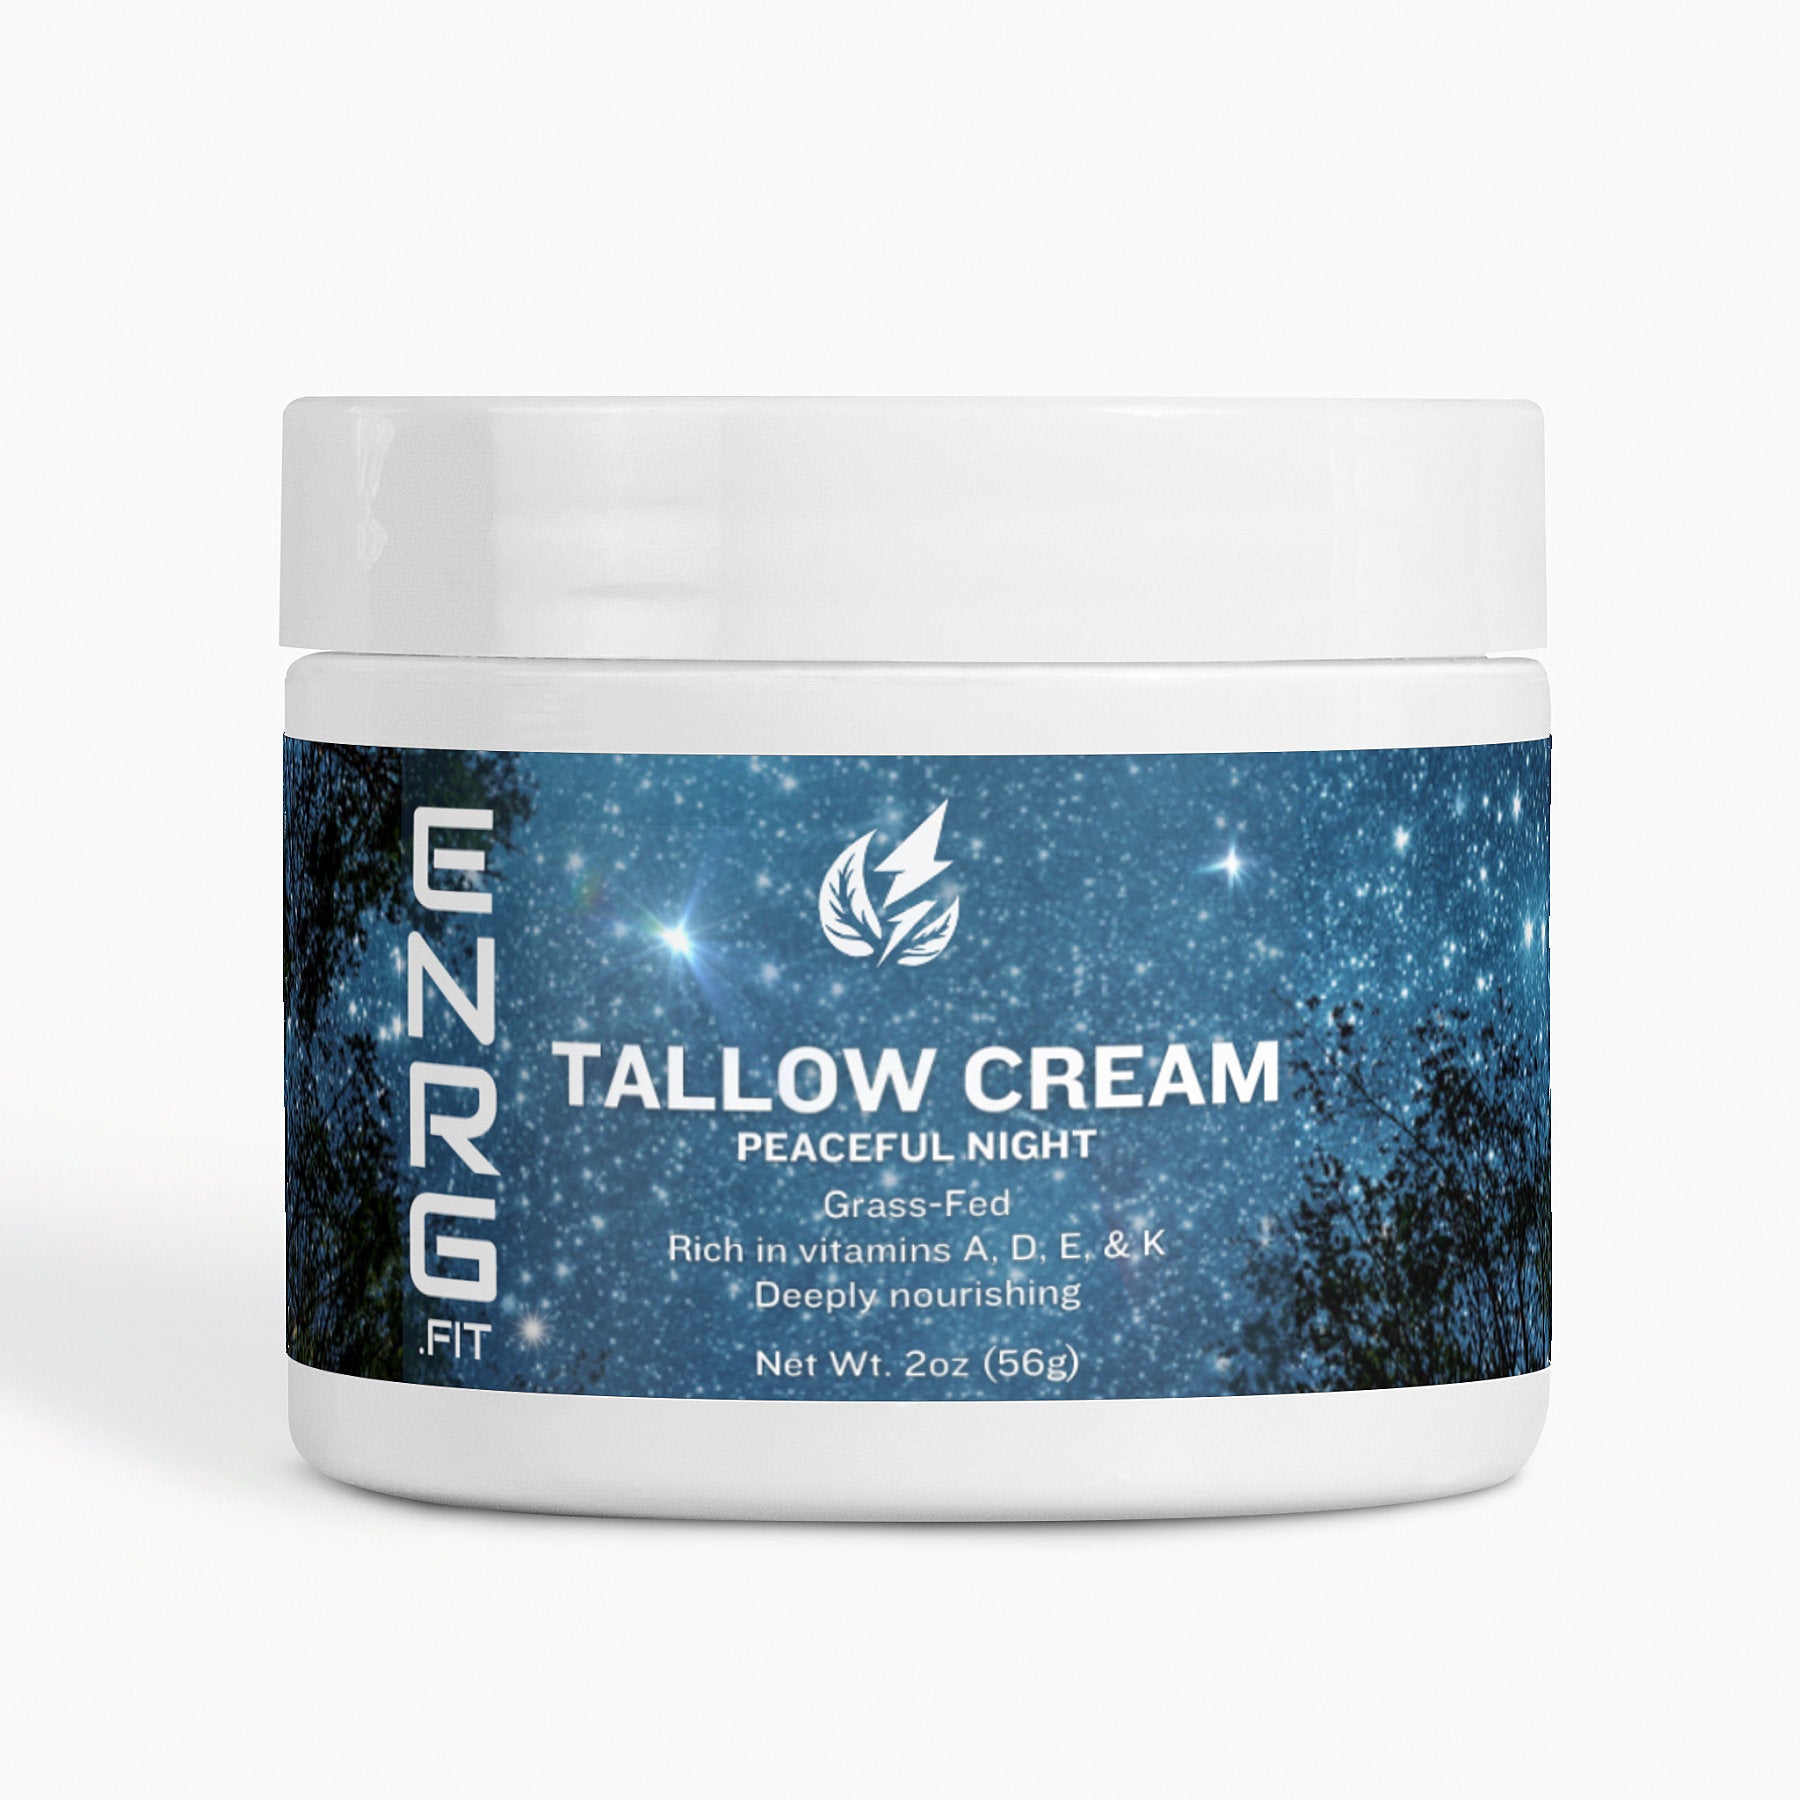 Tallow Cream Peaceful Night